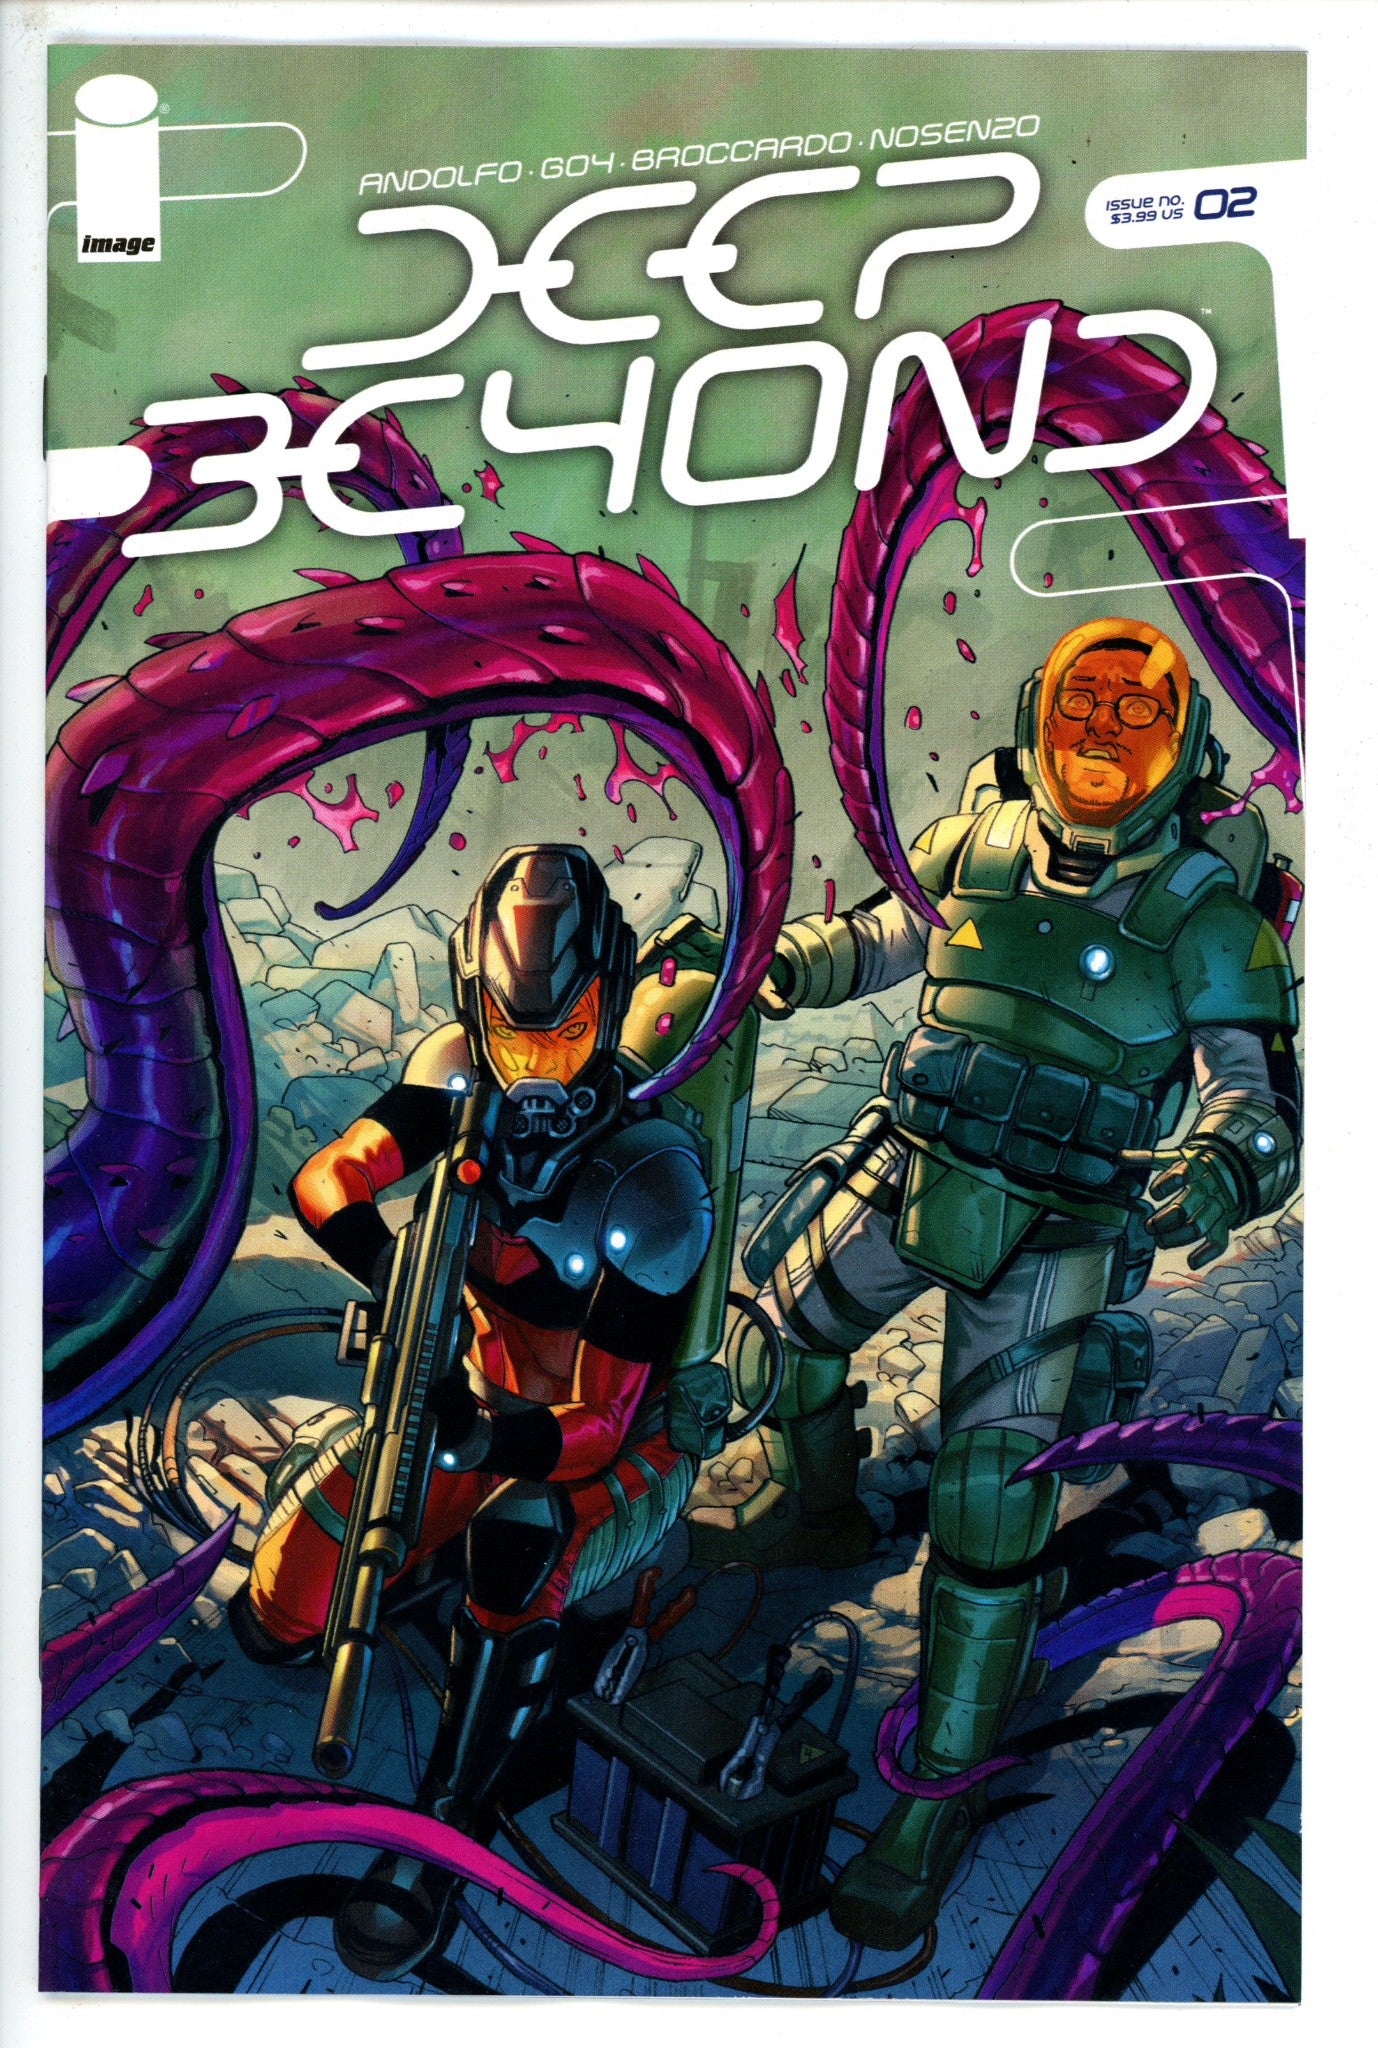 Deep Beyond 2-Image-CaptCan Comics Inc